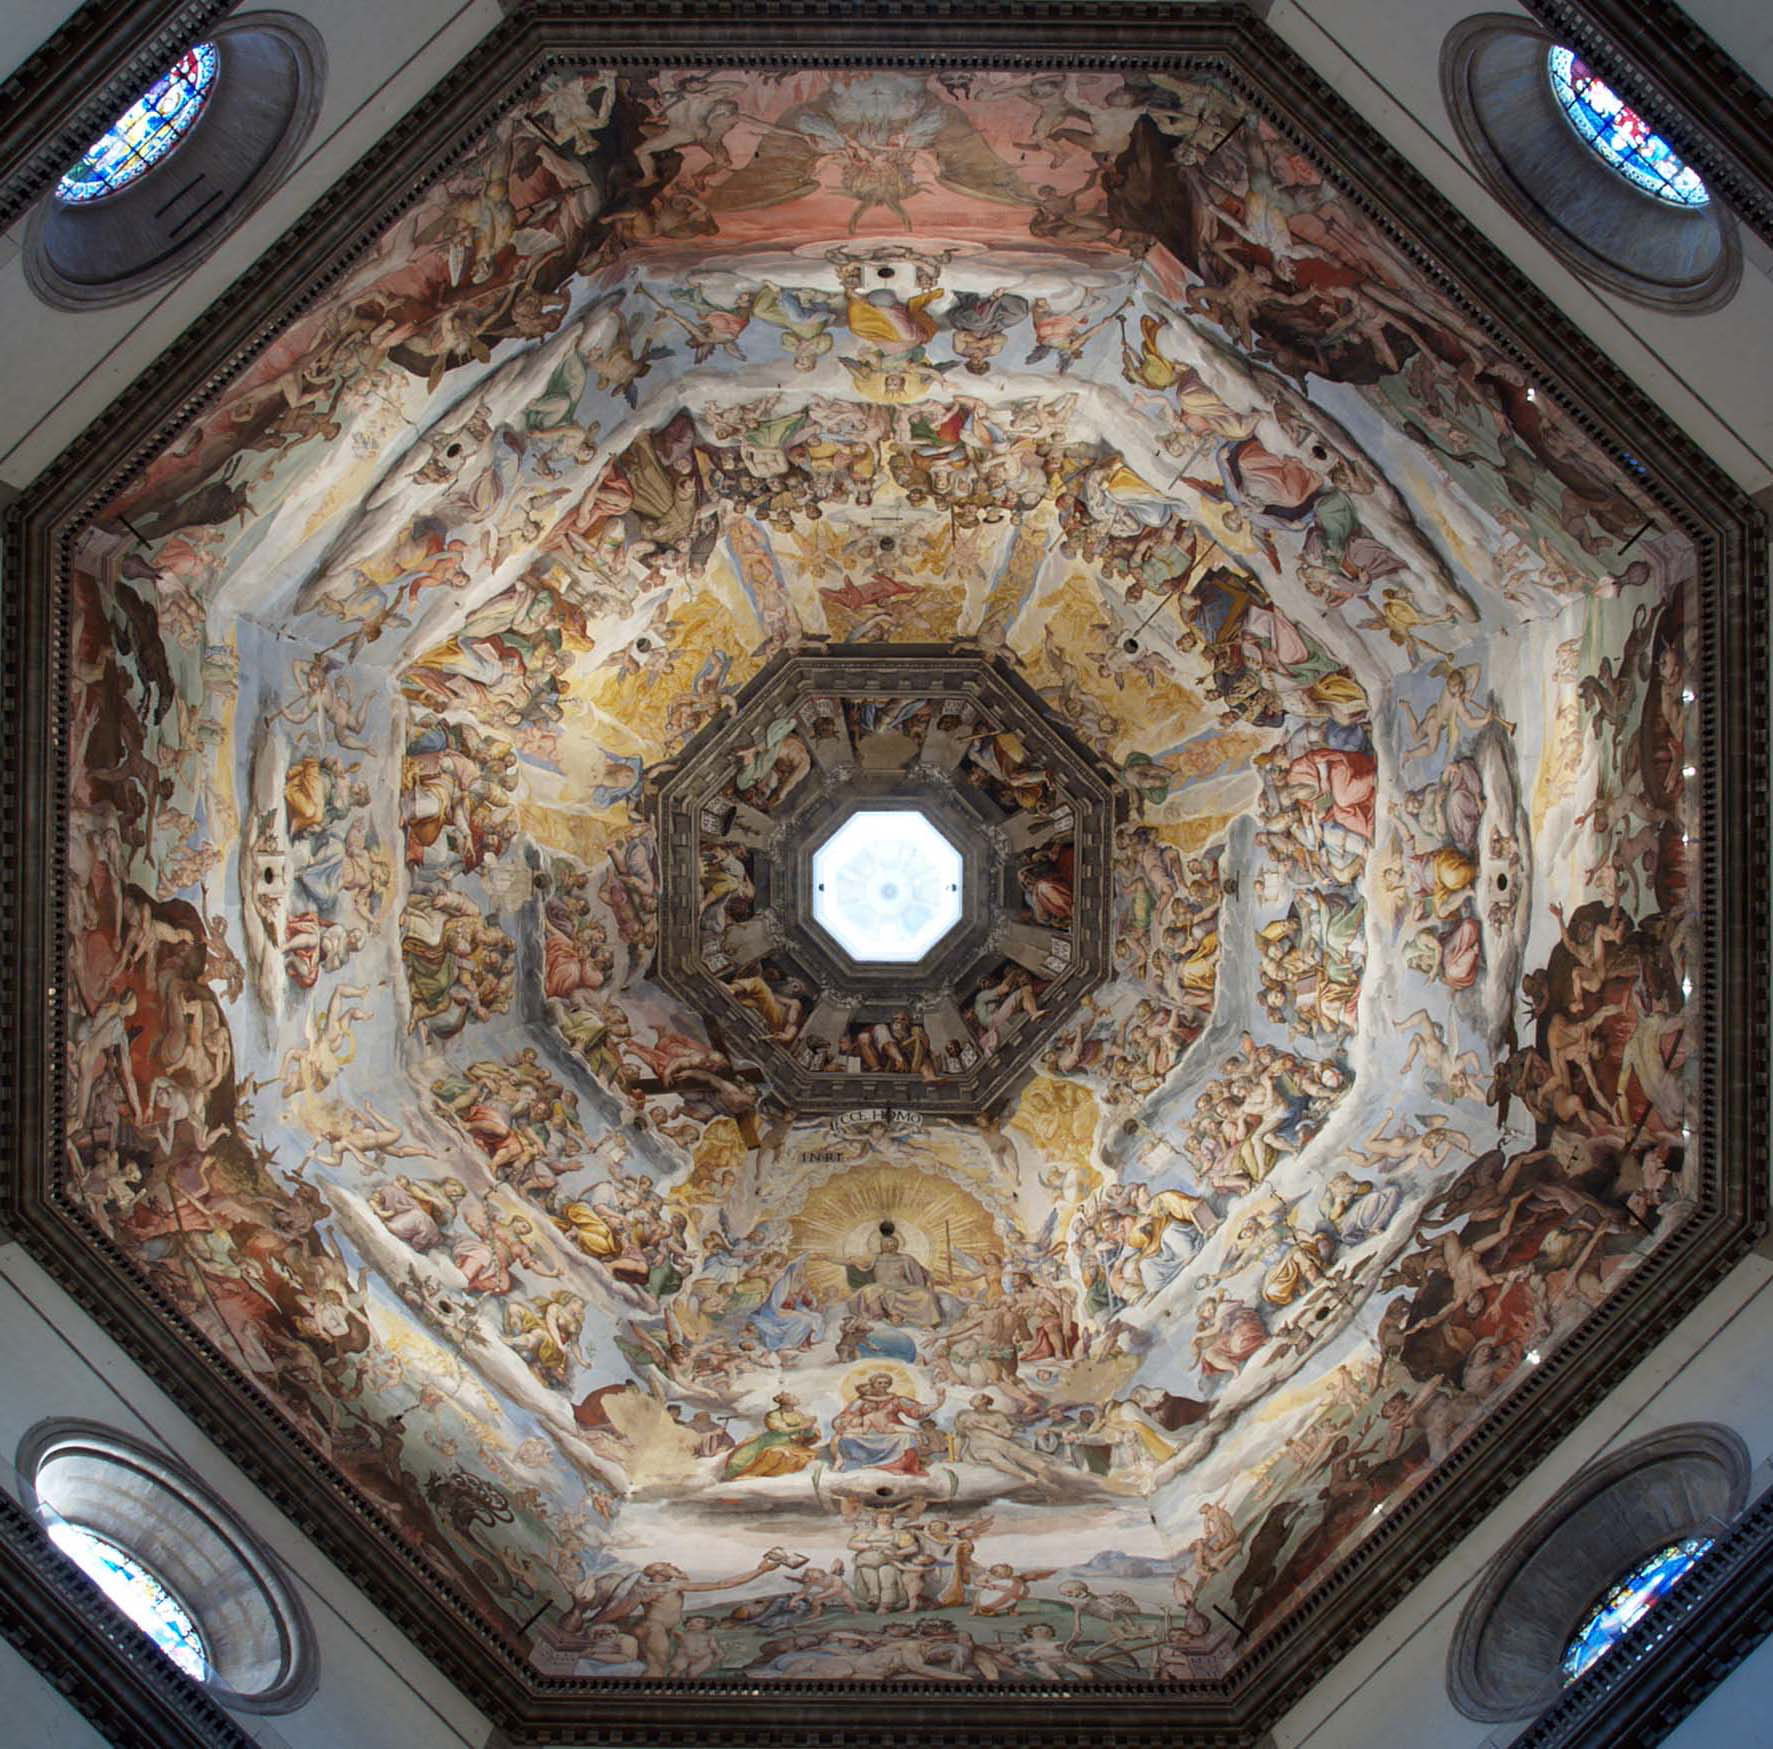 Volta affrescata della Cupola di Brunelleschi